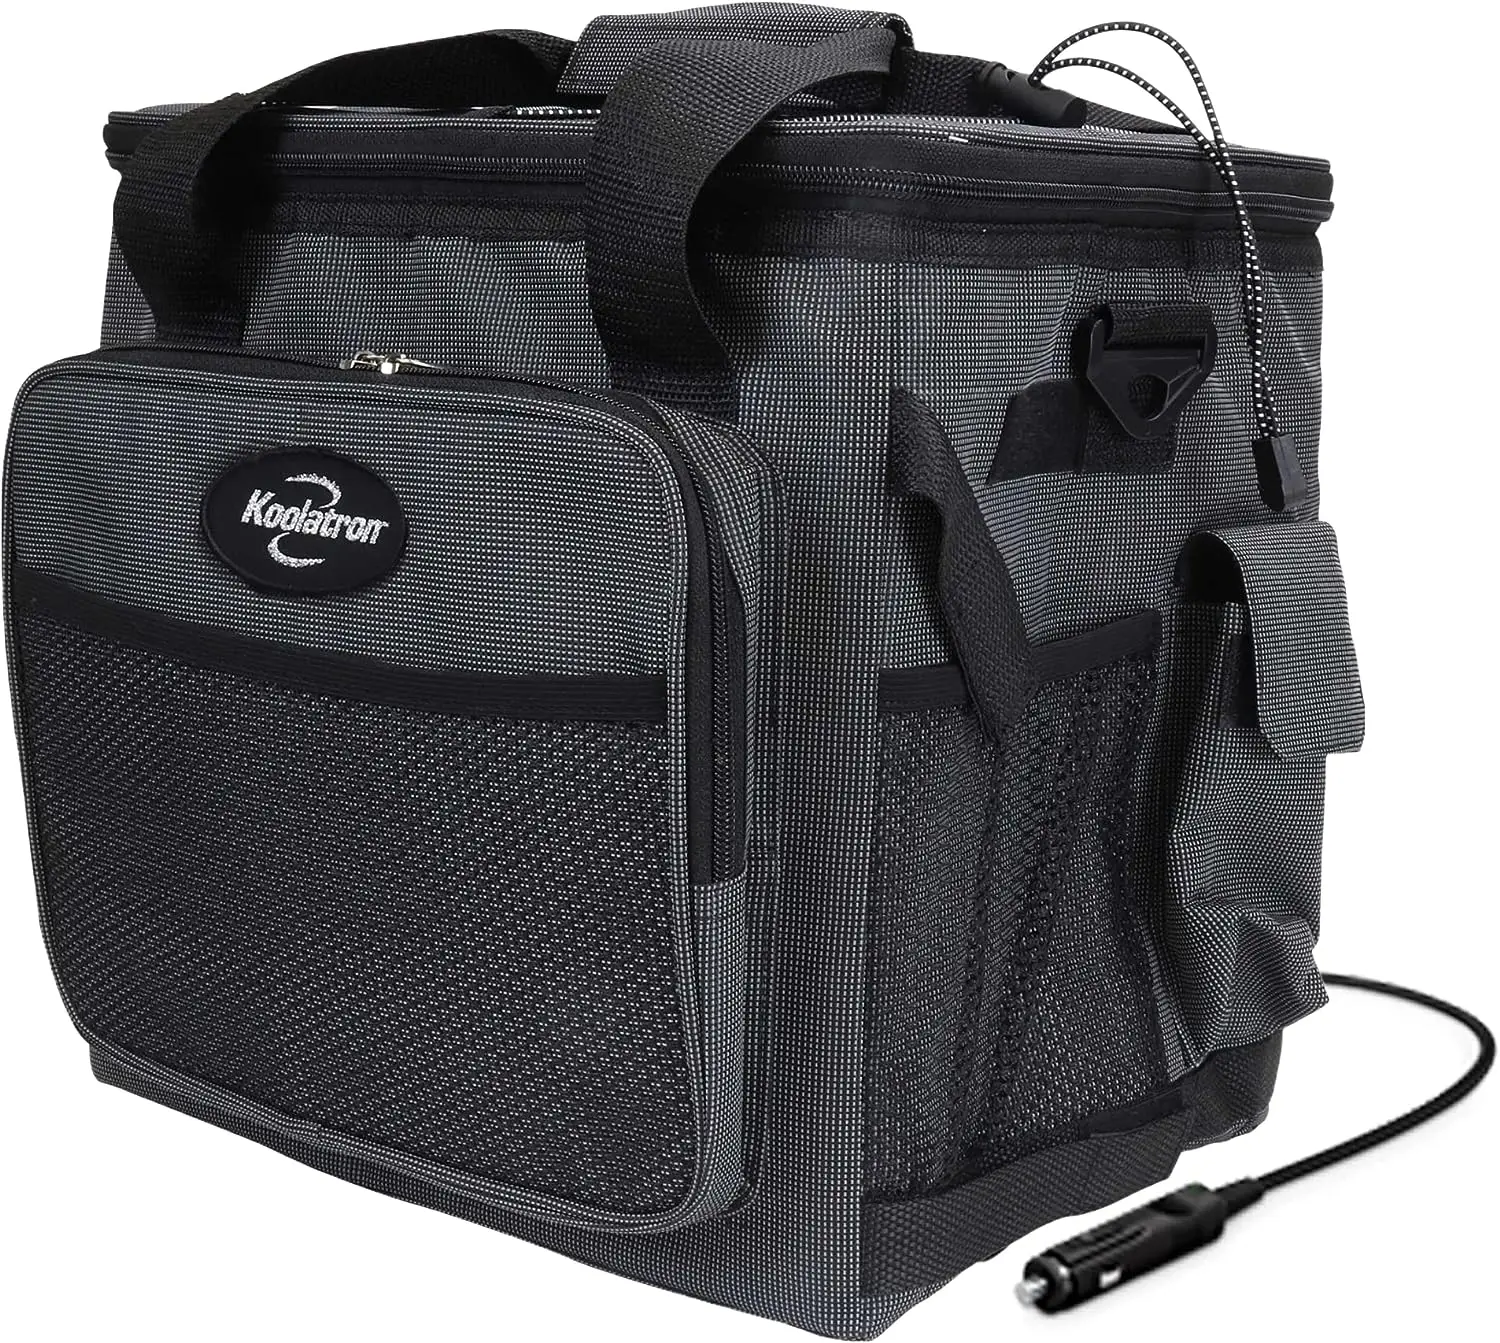 

Iceless 12V Cooler Bag, 26 qt (25 L) Black/Gray Soft-Sided Portable Car Fridge w/DC Power Cord, Adjustable Shoulder Strap, Cord